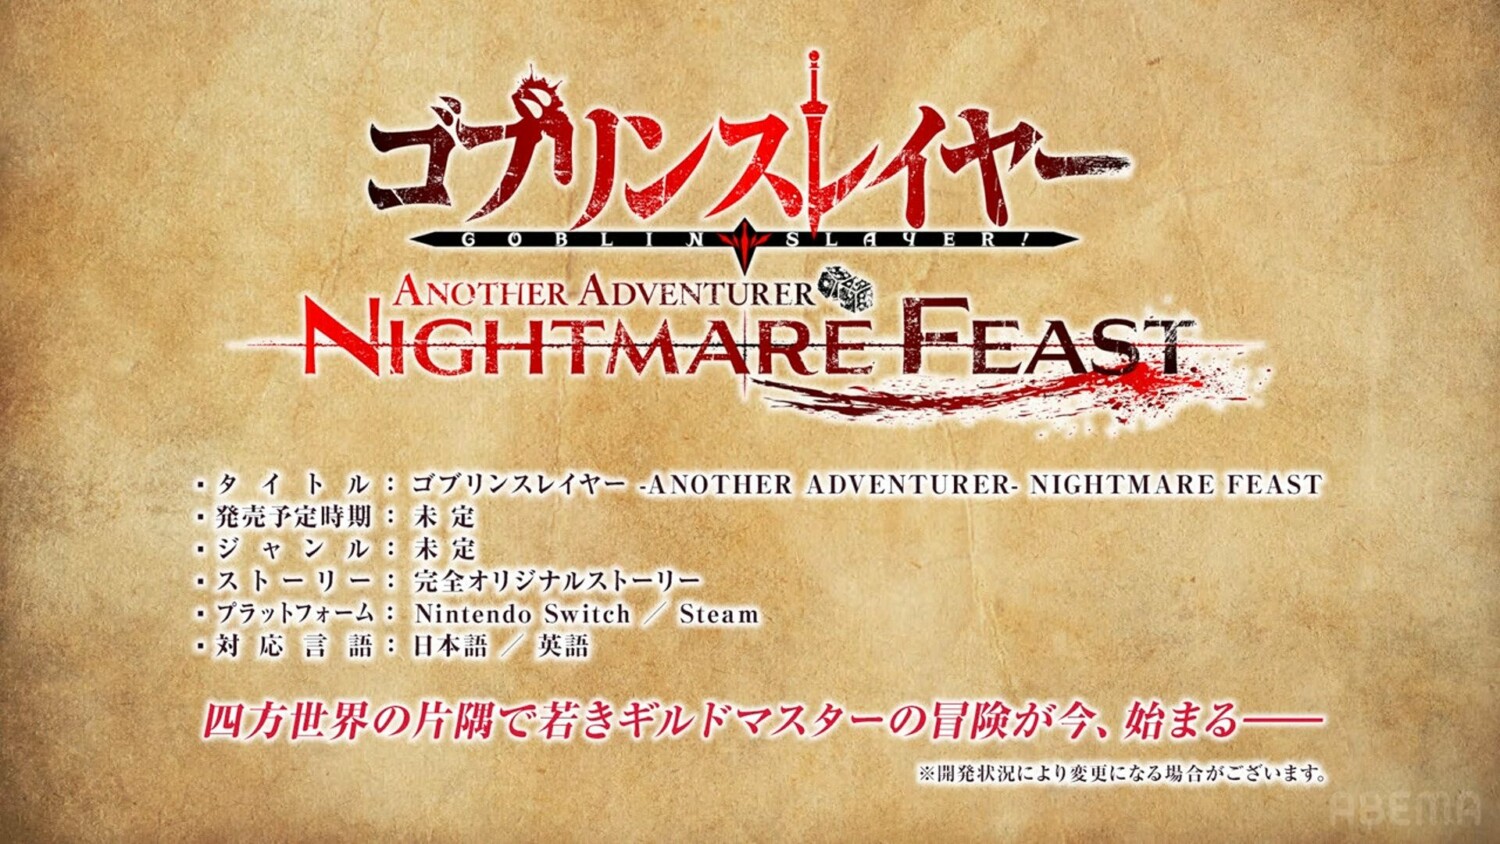 Goblin Slayer Another Adventurer: Nightmare Feast (Switch): primeiras  informações e trailer são revelados - Nintendo Blast